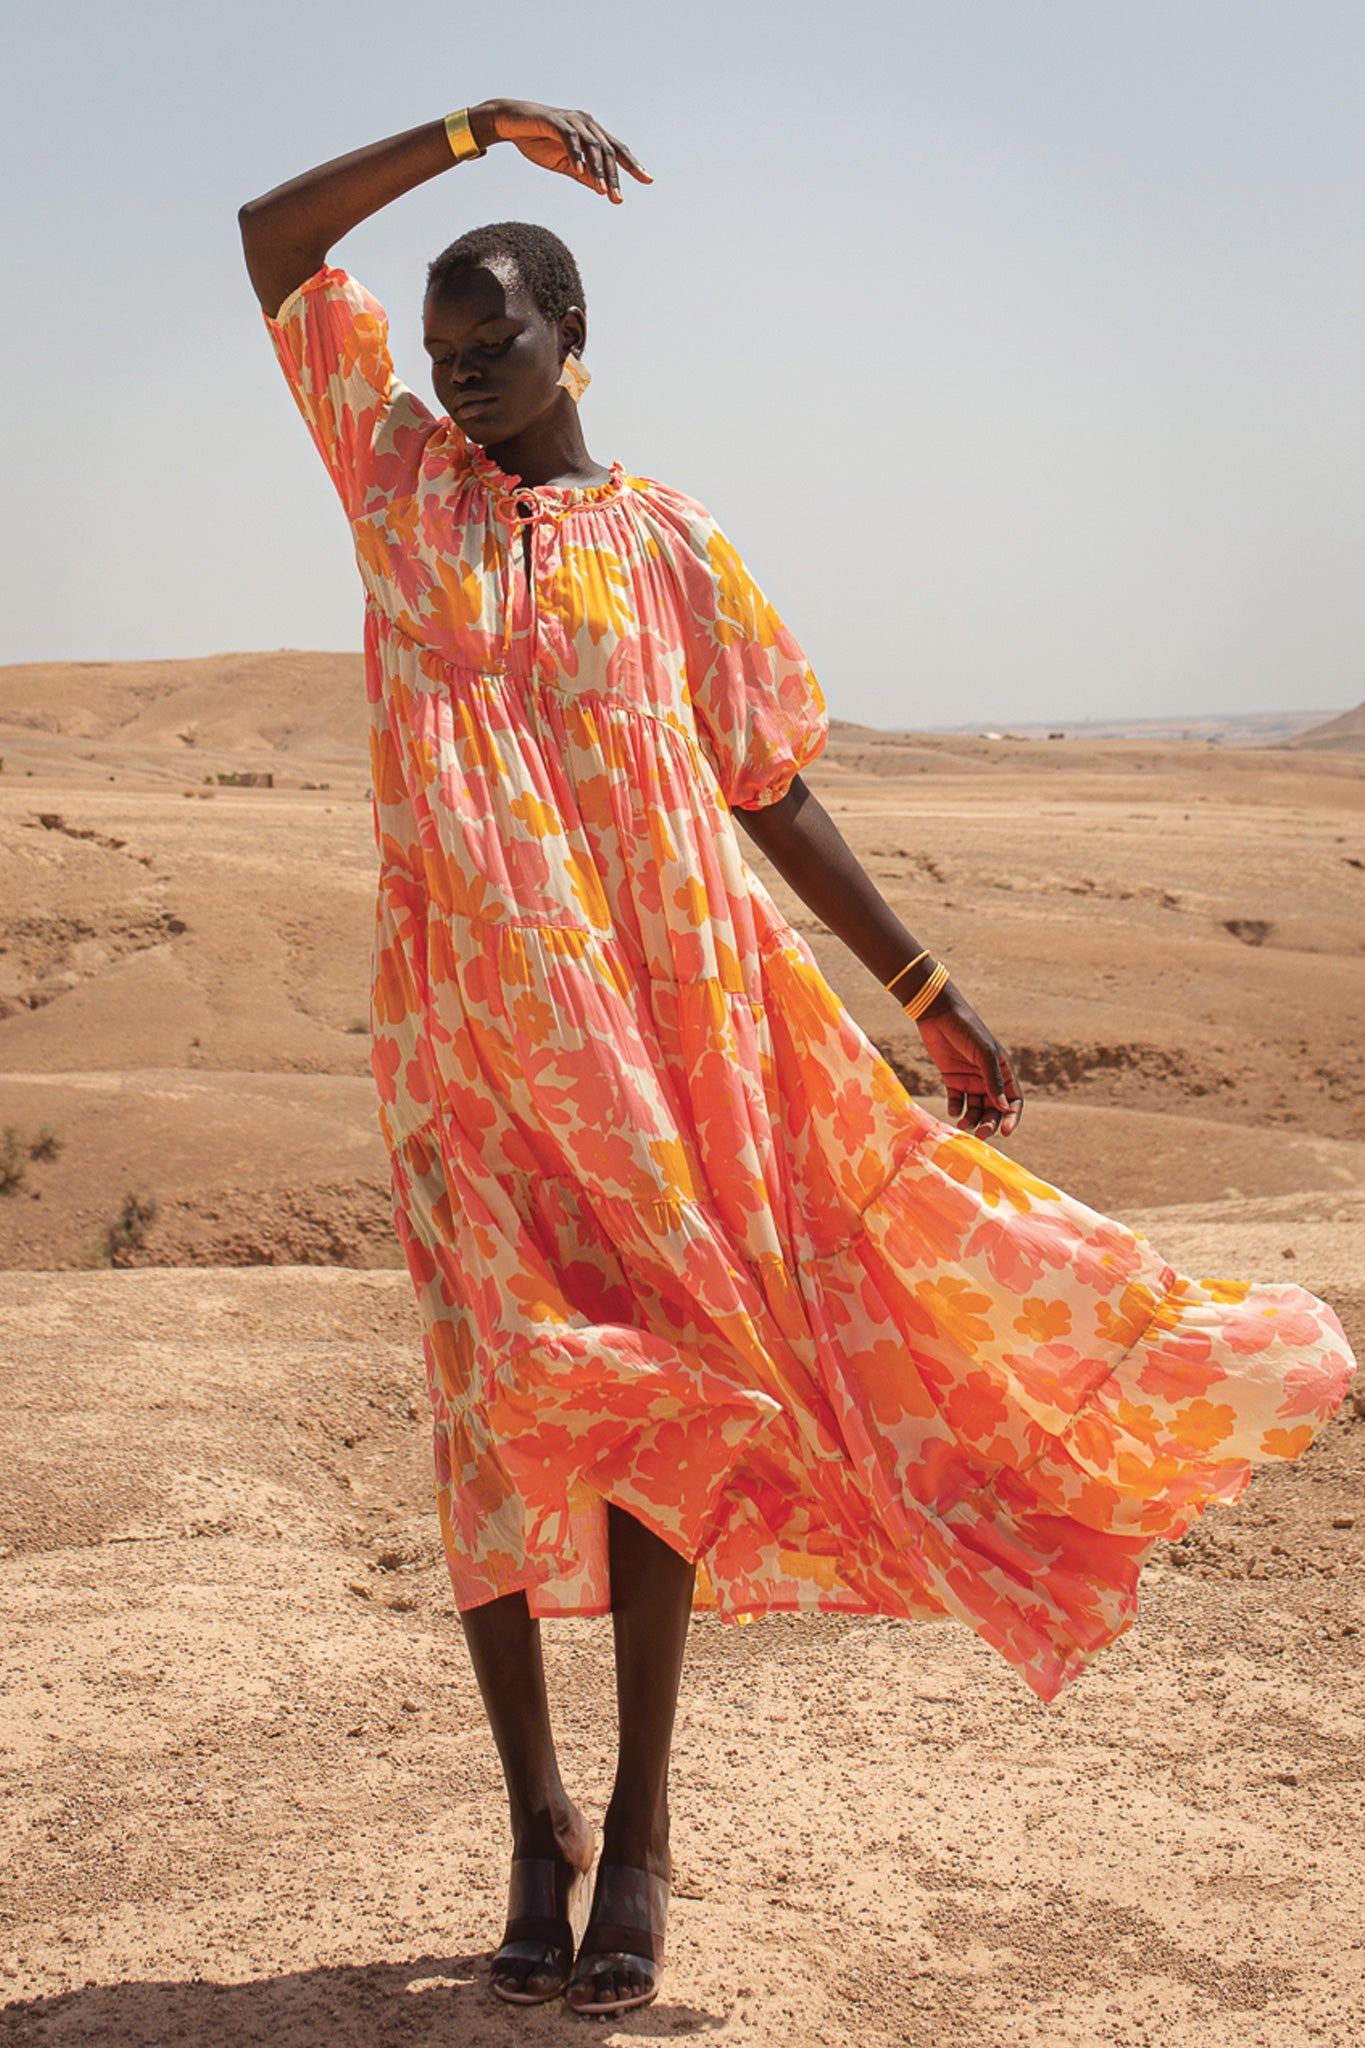 Emiri Maxi Dress - Coquita Anis met handgenaaide gouddraad